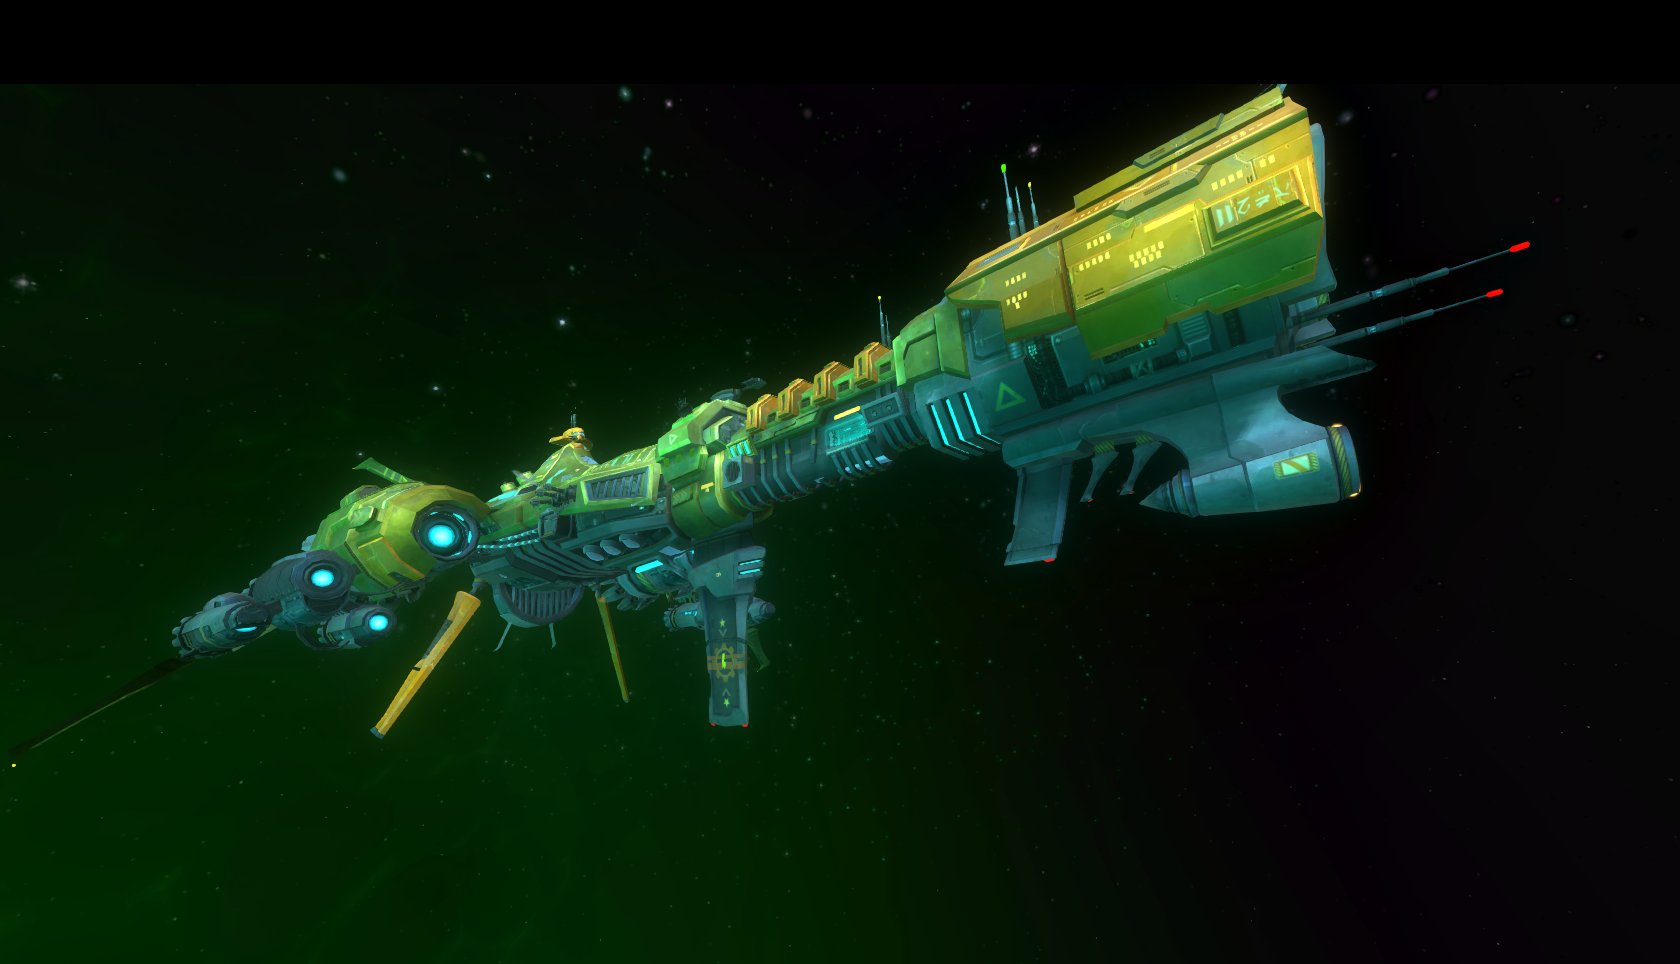 Wildstar Video Games Spaceship Green 1680x964